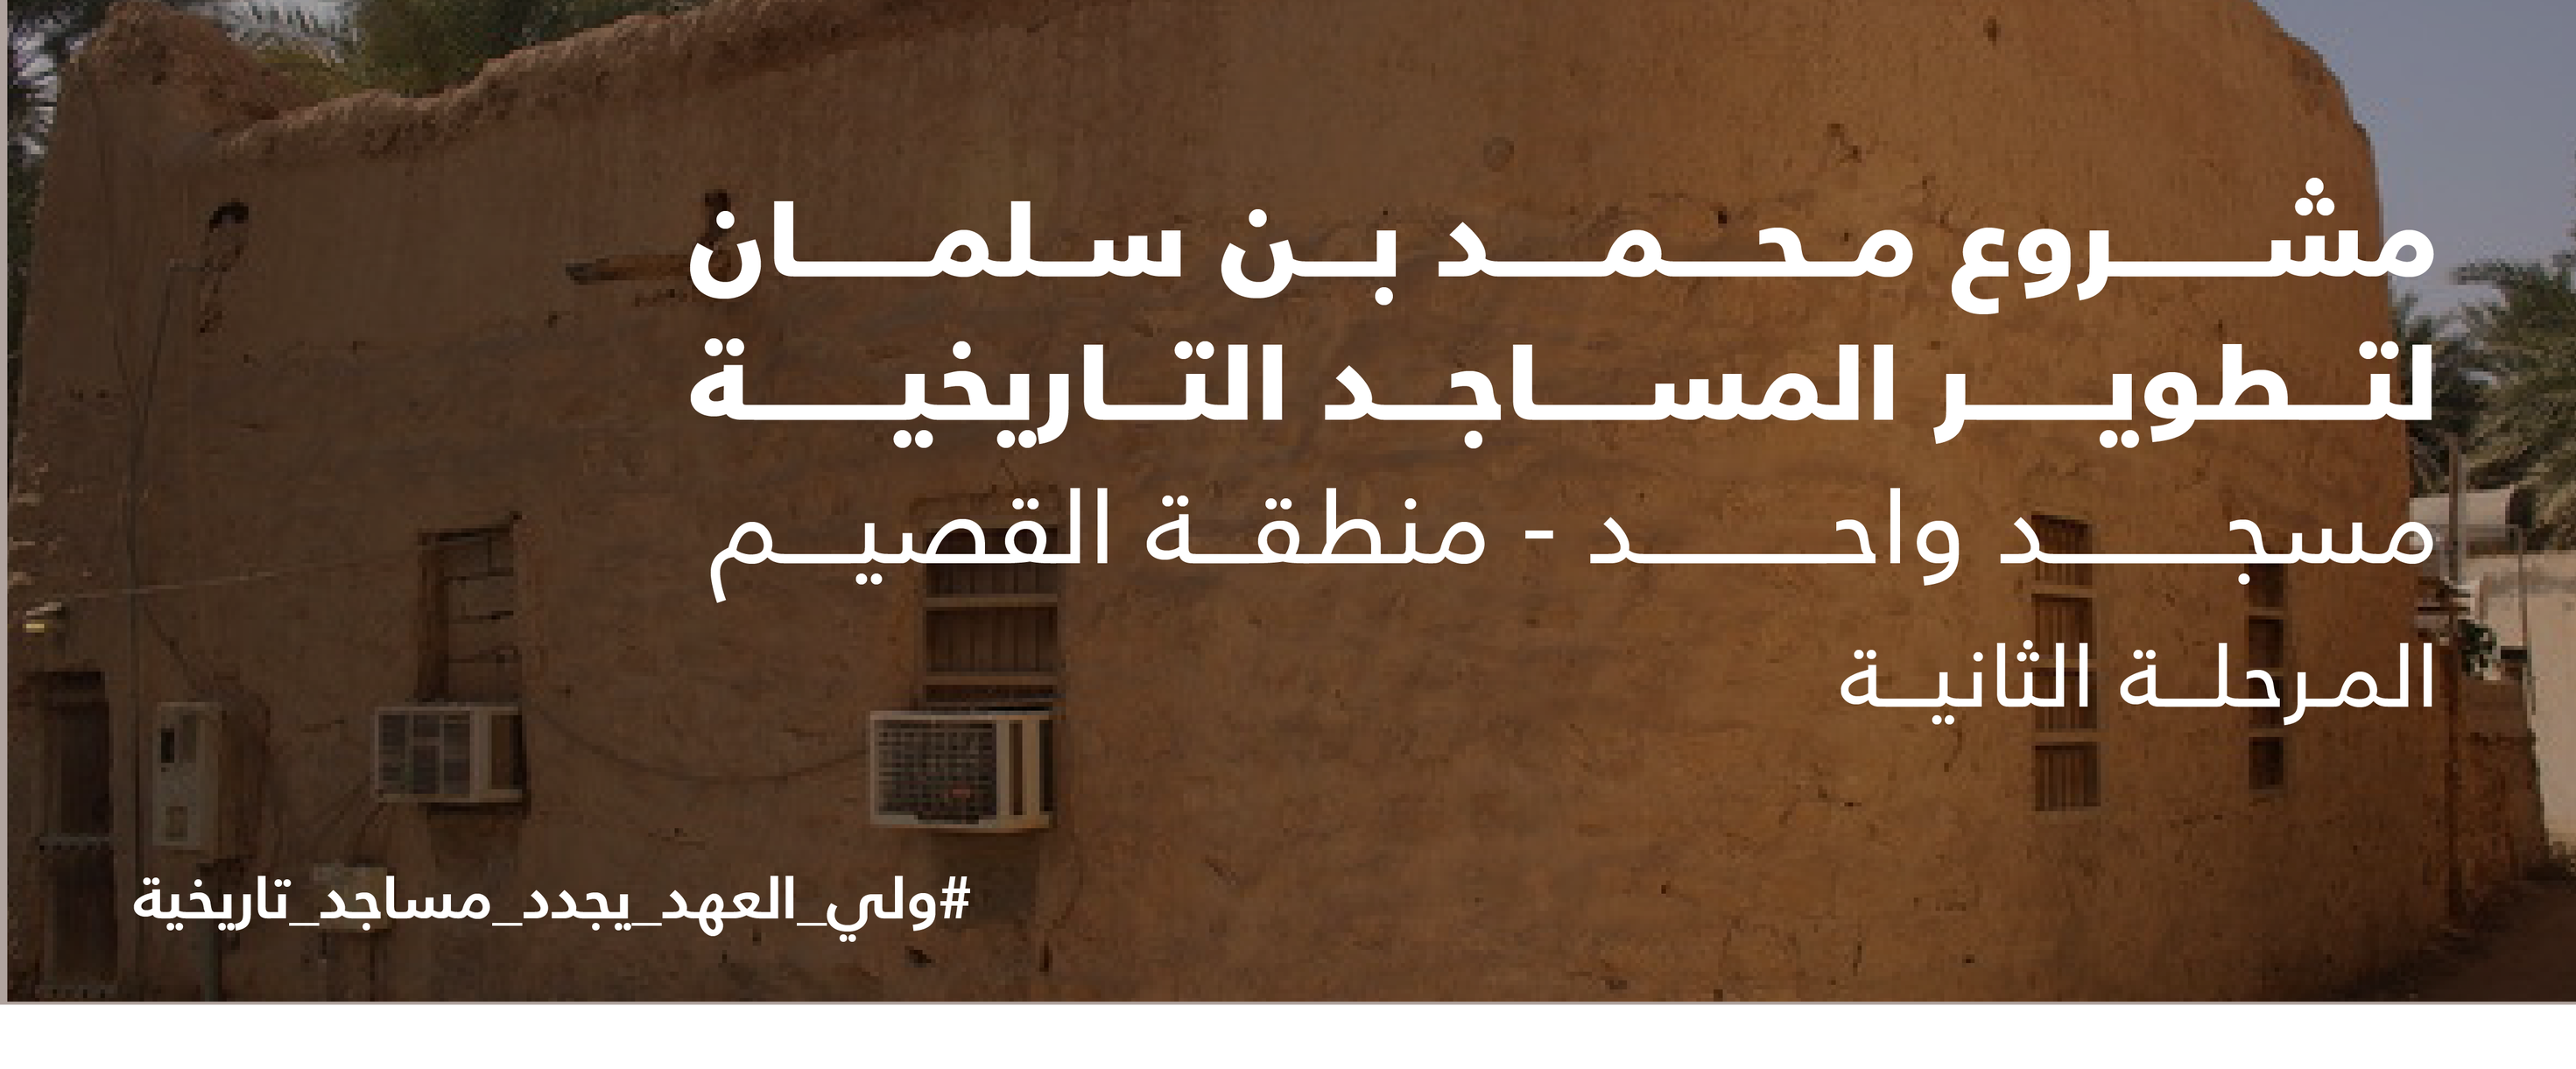 مواصفات مسجد الرويبة قبل وبعد ترميمه ضمن مشروع محمد بن سلمان